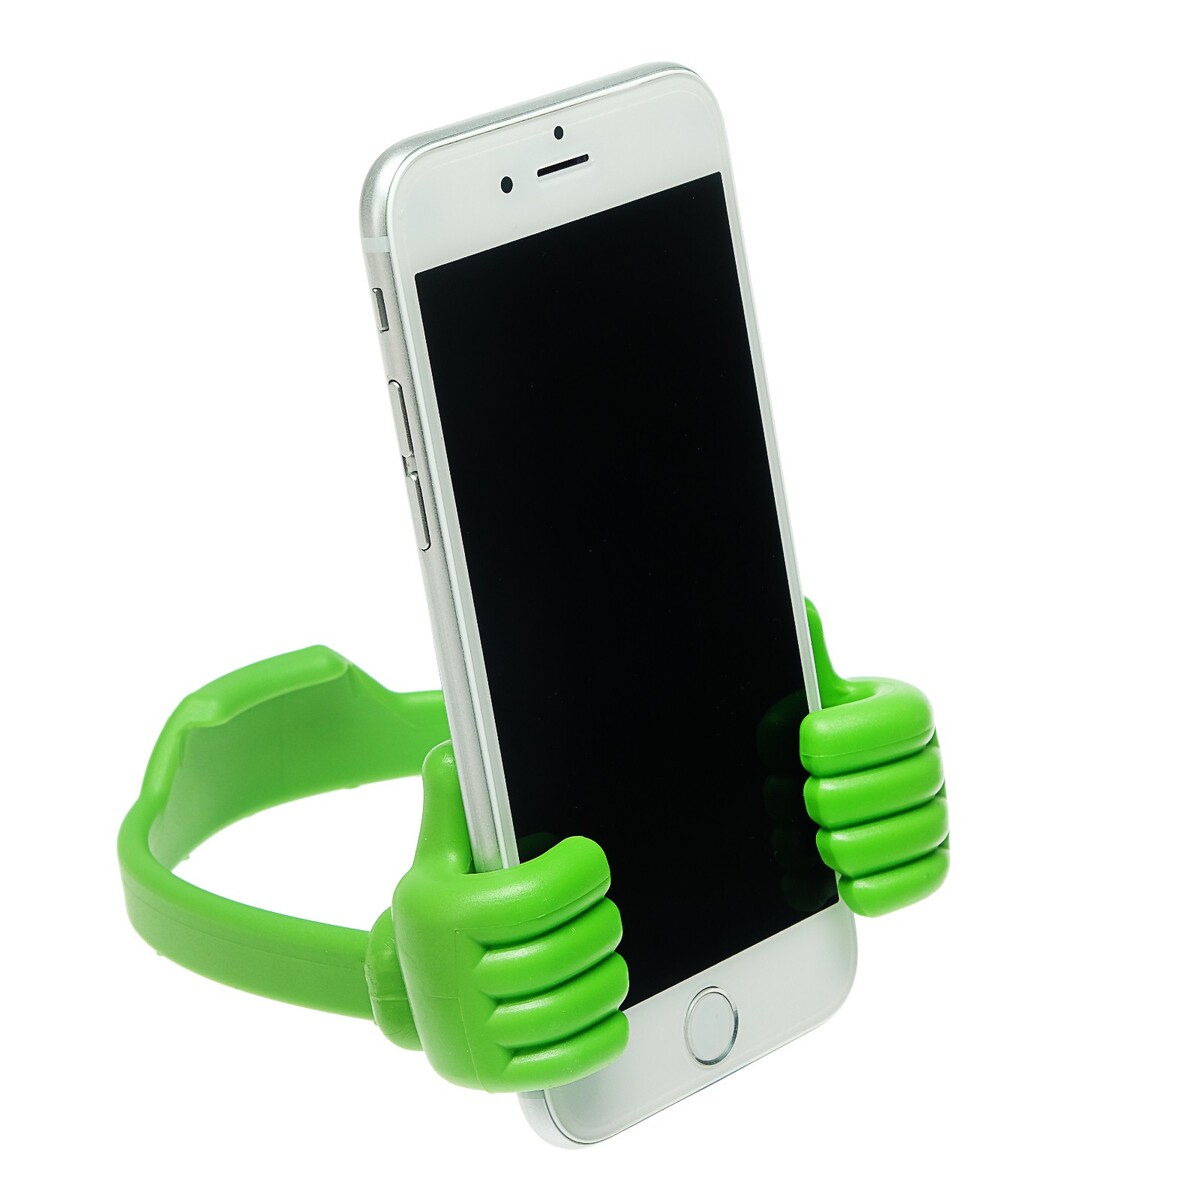 Подставка для телефона luazon, в форме рук, регулируемая ширина, зеленая держатель подставка попсокет для телефона luazon с креплением